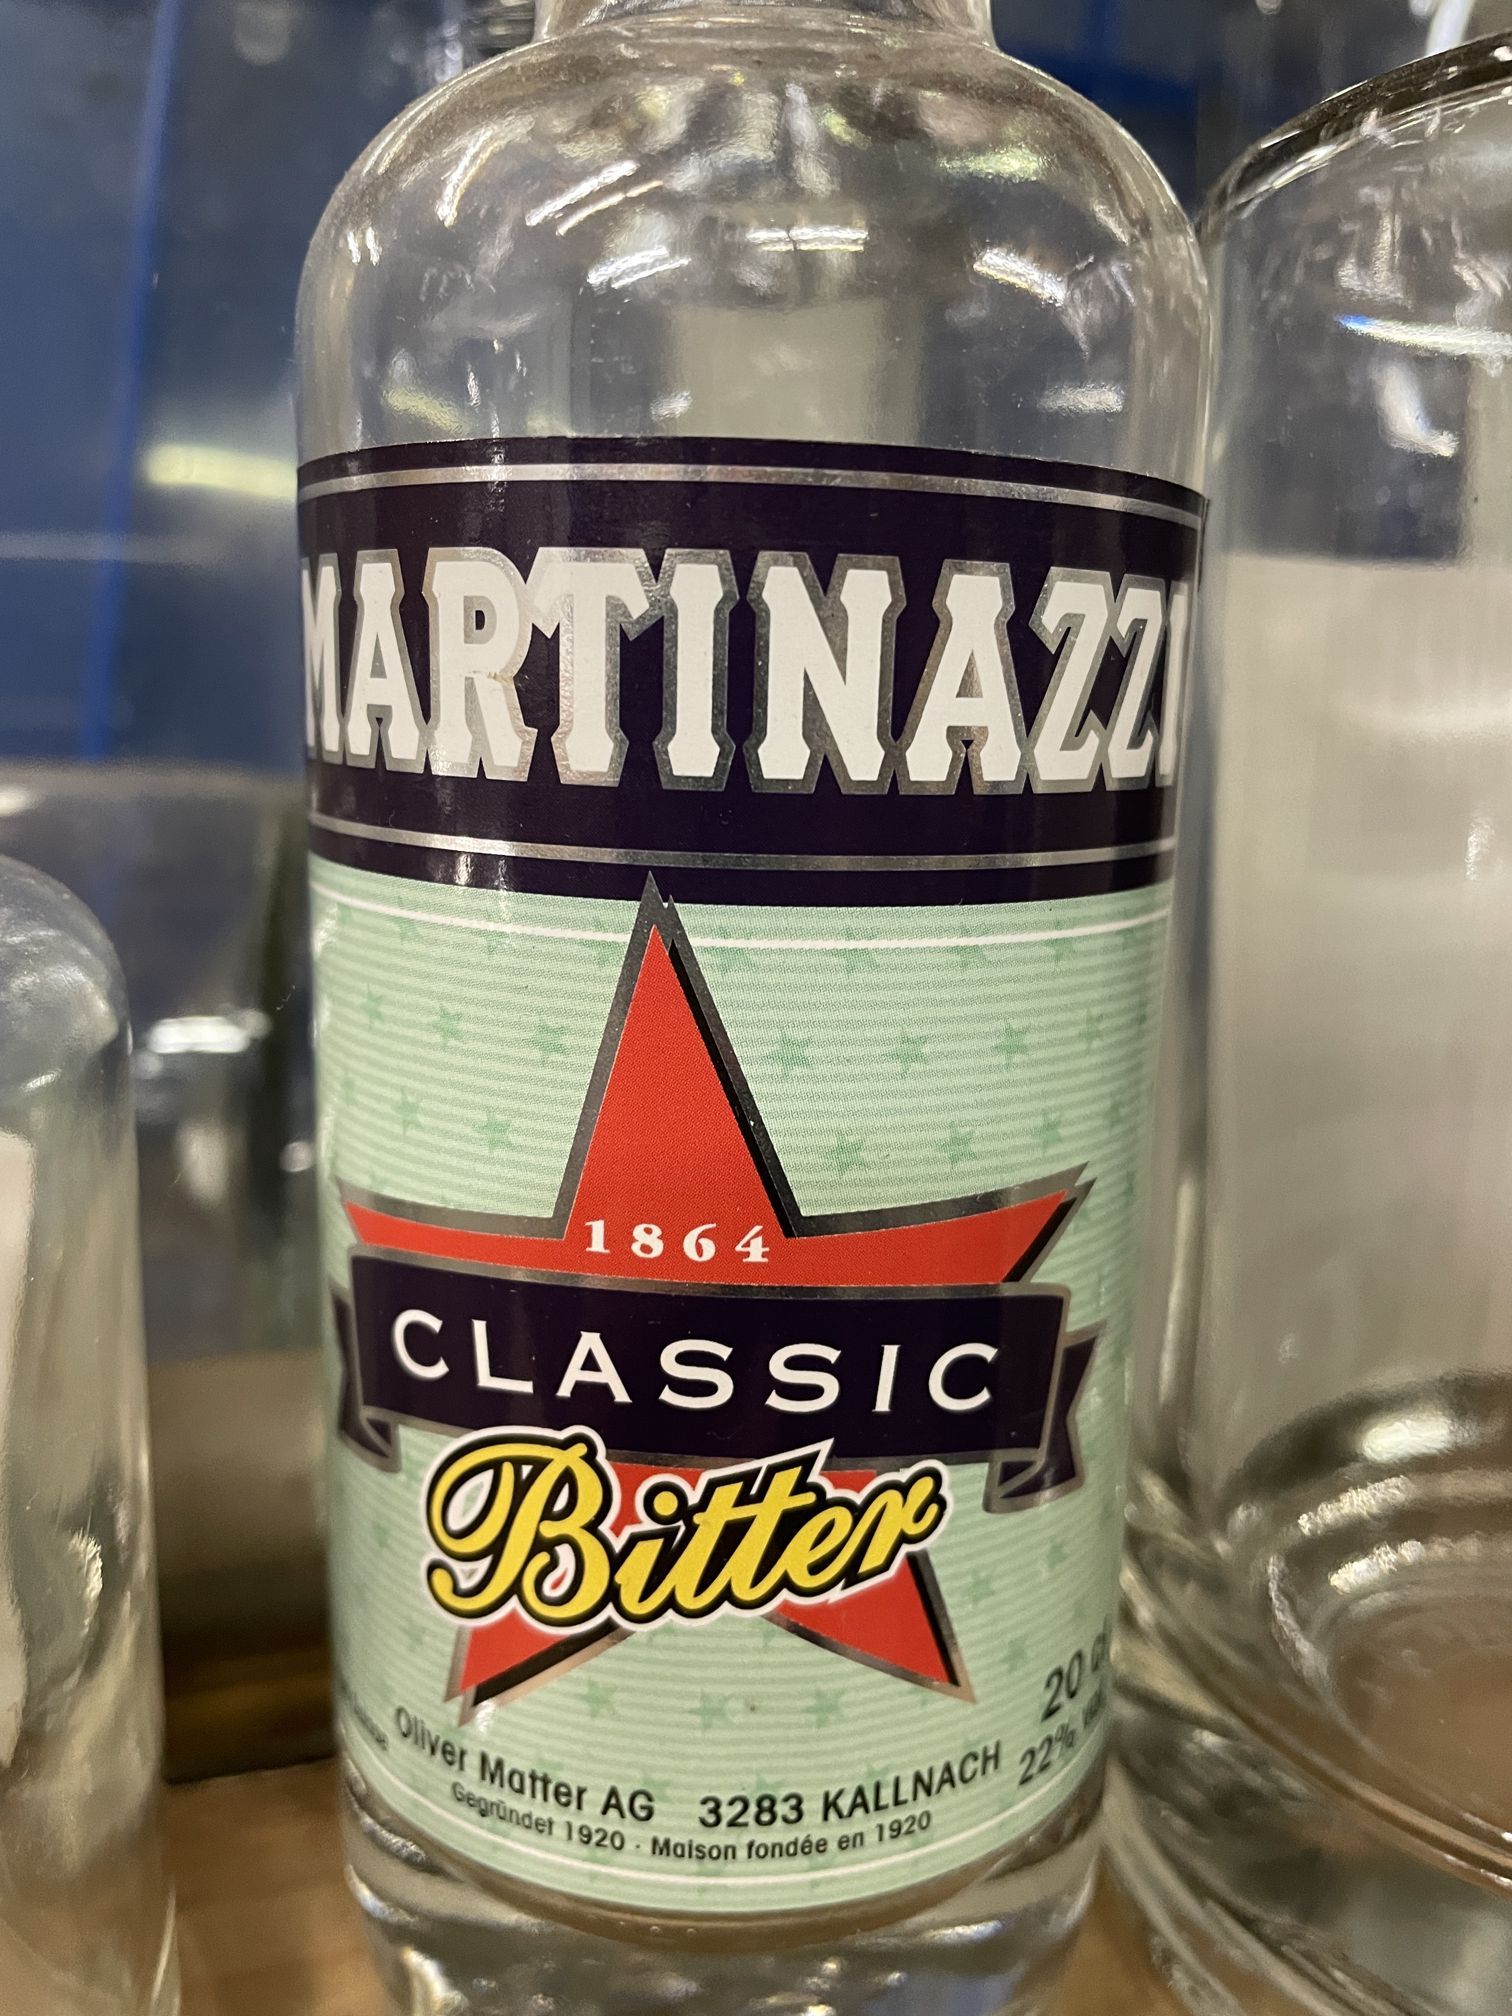 Leere Flasche mit Etikett für Martinazzi Bitter Aperitif